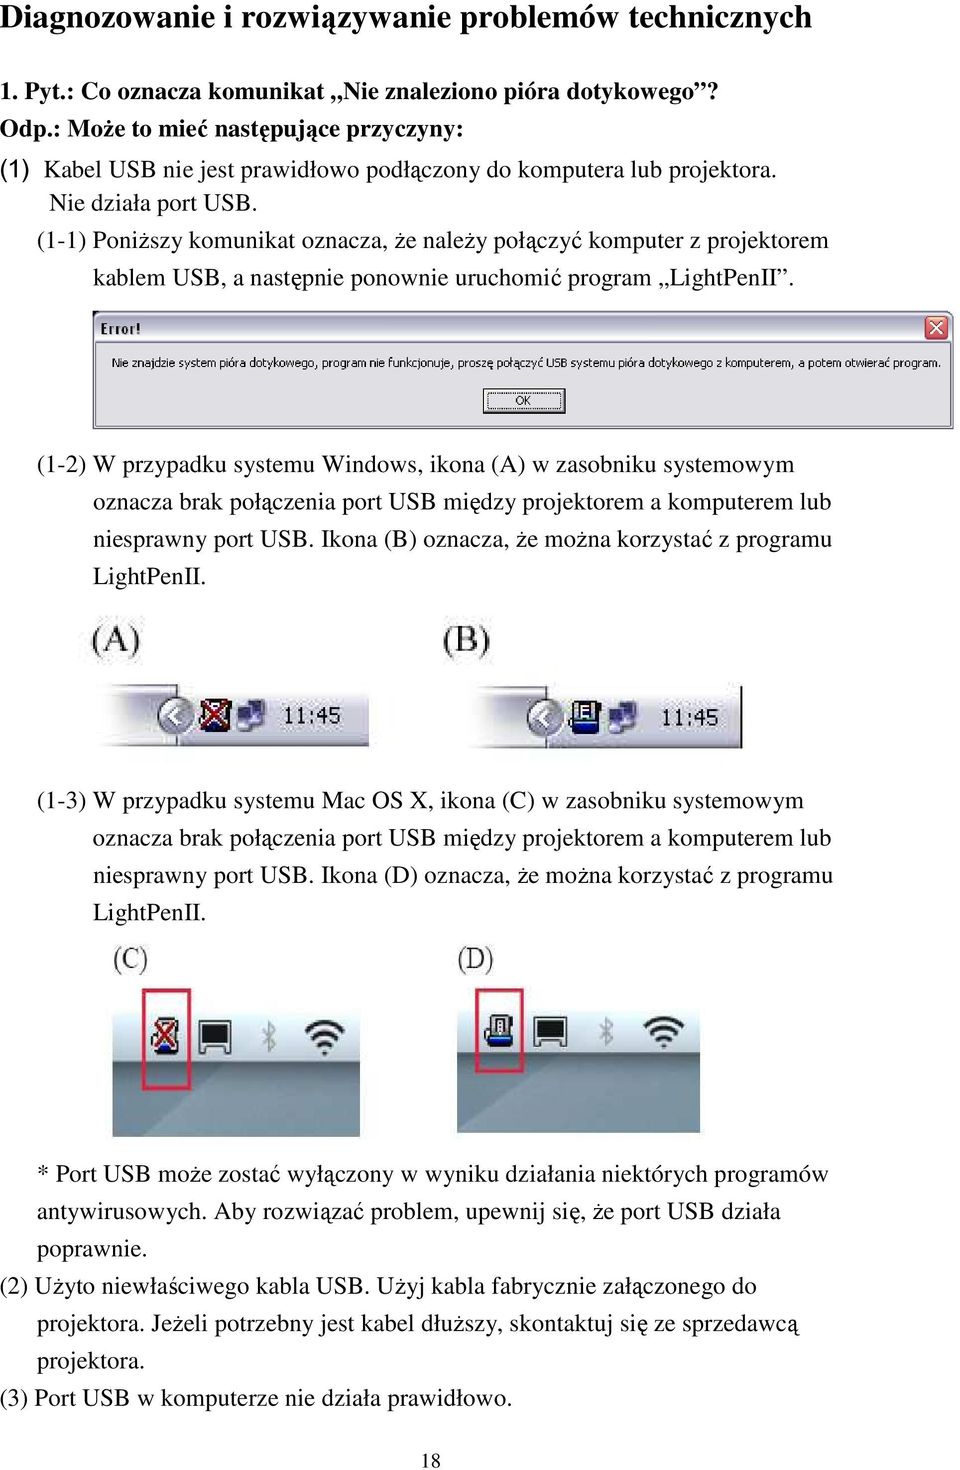 (1-1) Poniższy komunikat oznacza, że należy połączyć komputer z projektorem kablem USB, a następnie ponownie uruchomić program LightPenII.